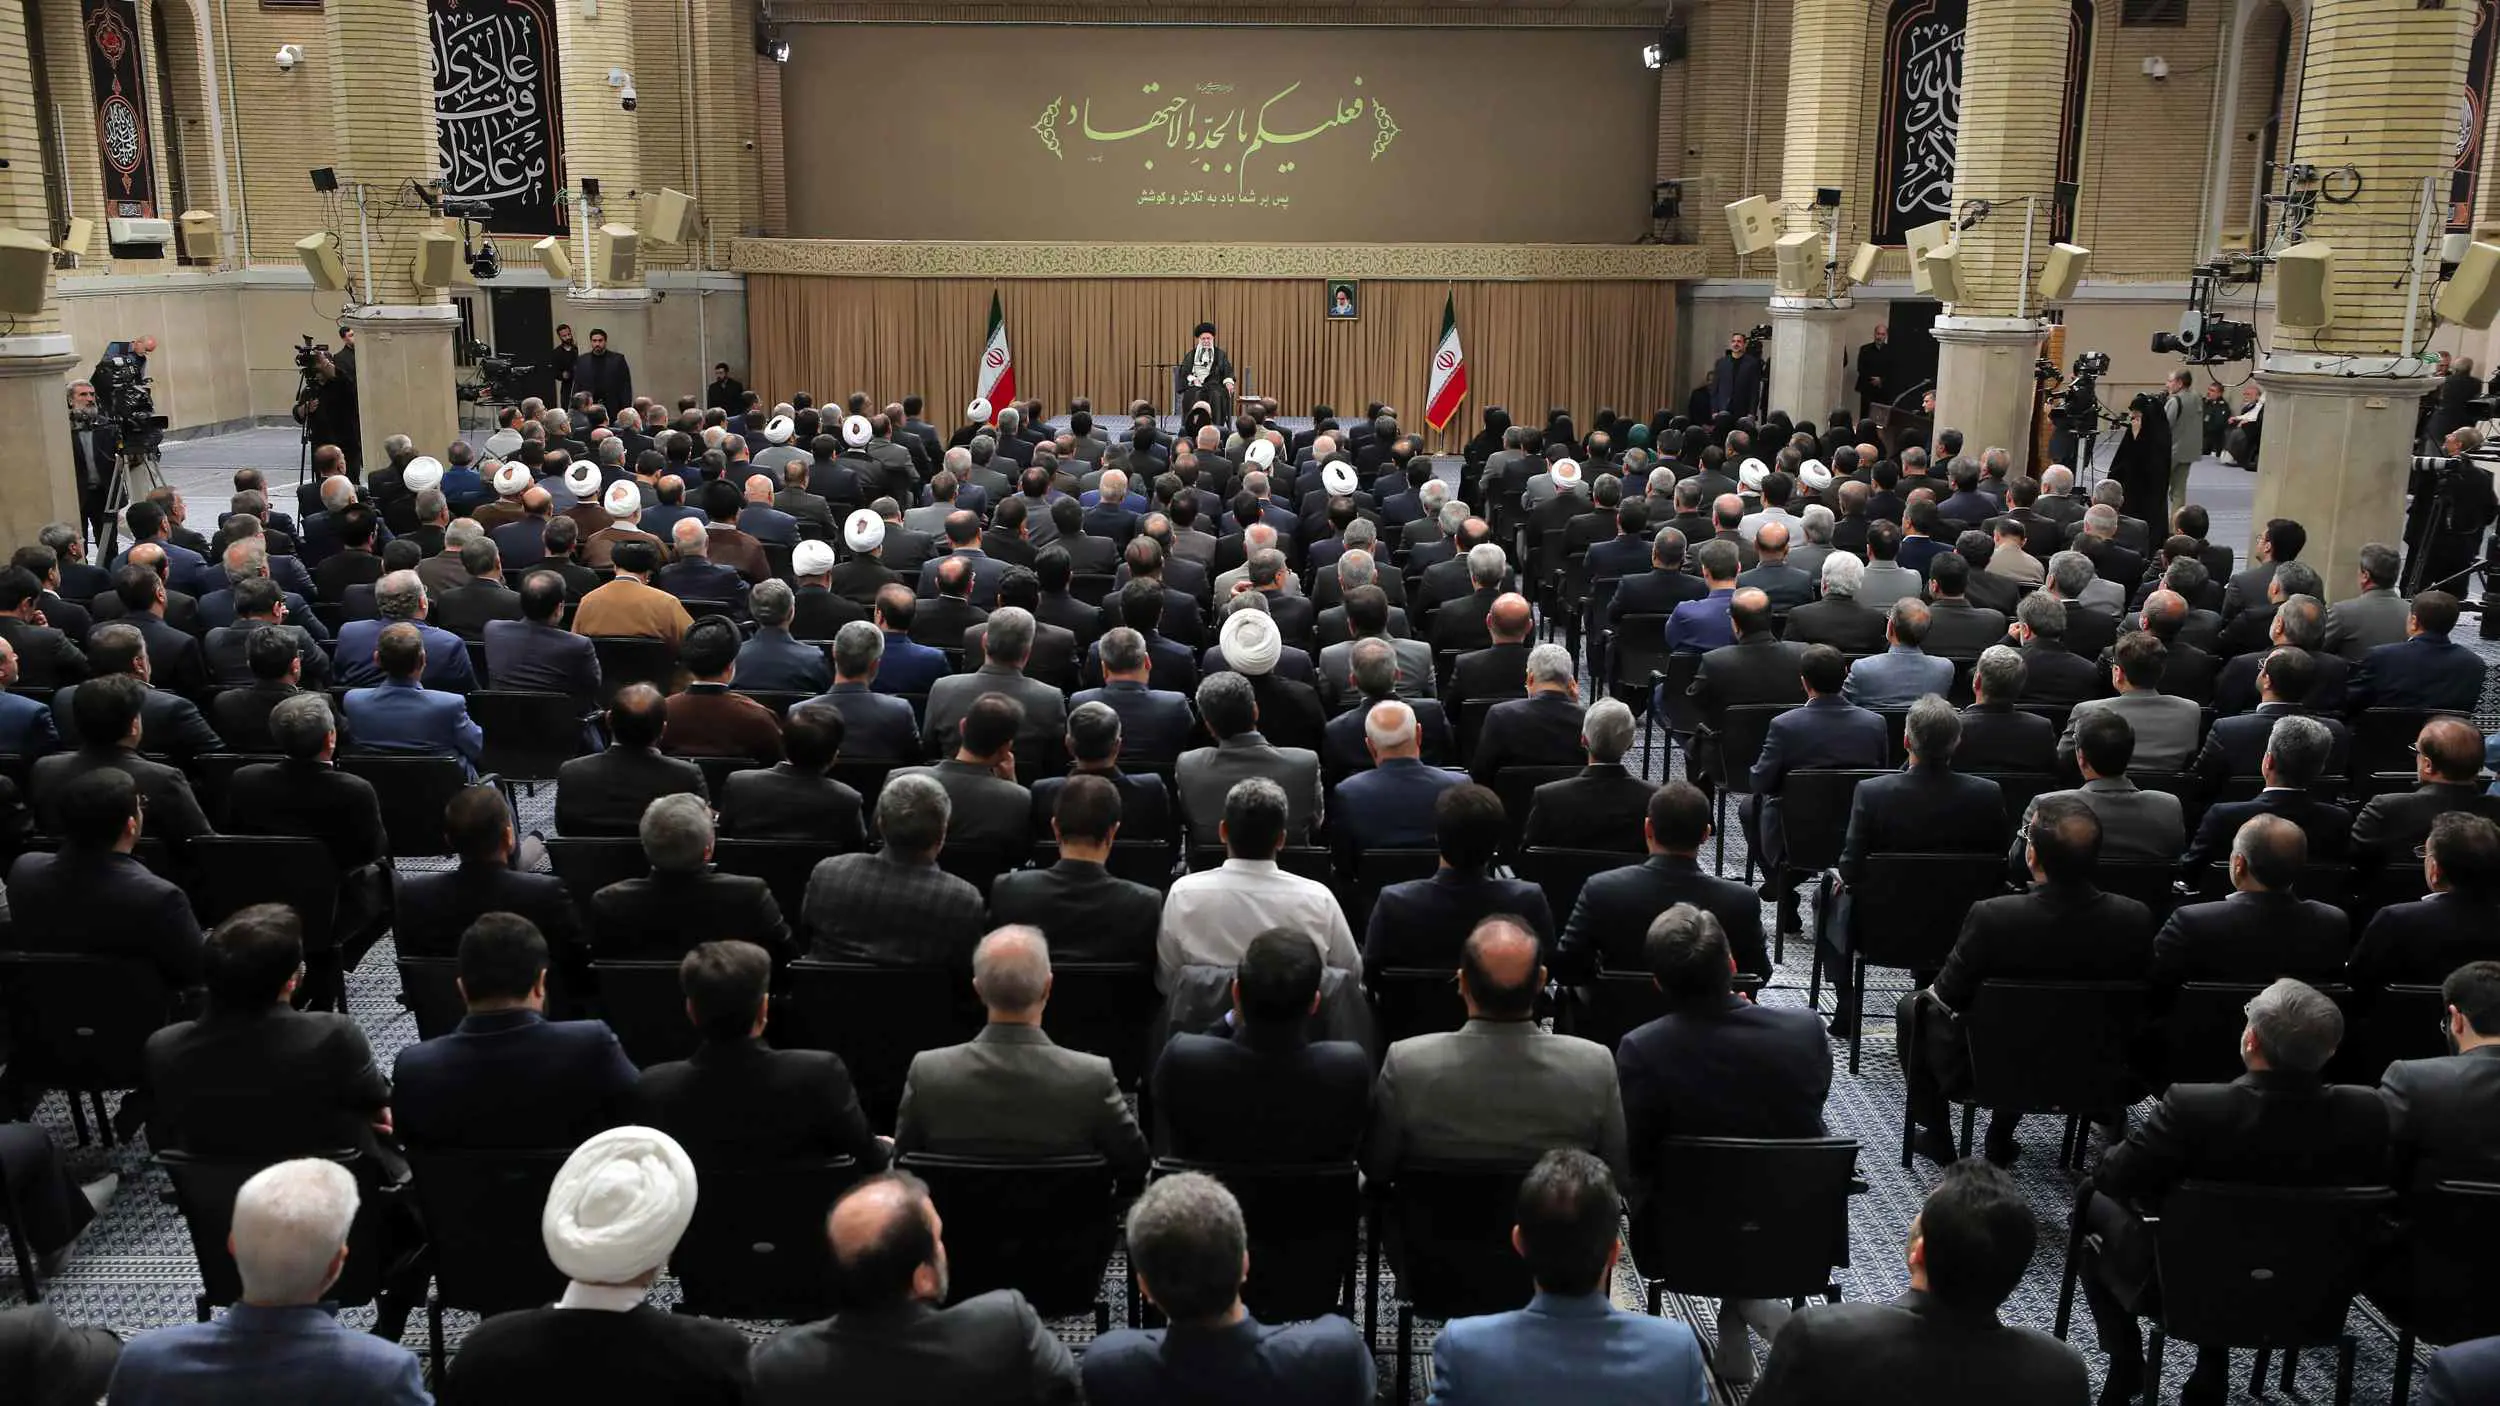 خامنئي يوصي البرلمان الإيراني "المتشدد" بالتعاون مع بزشكيان